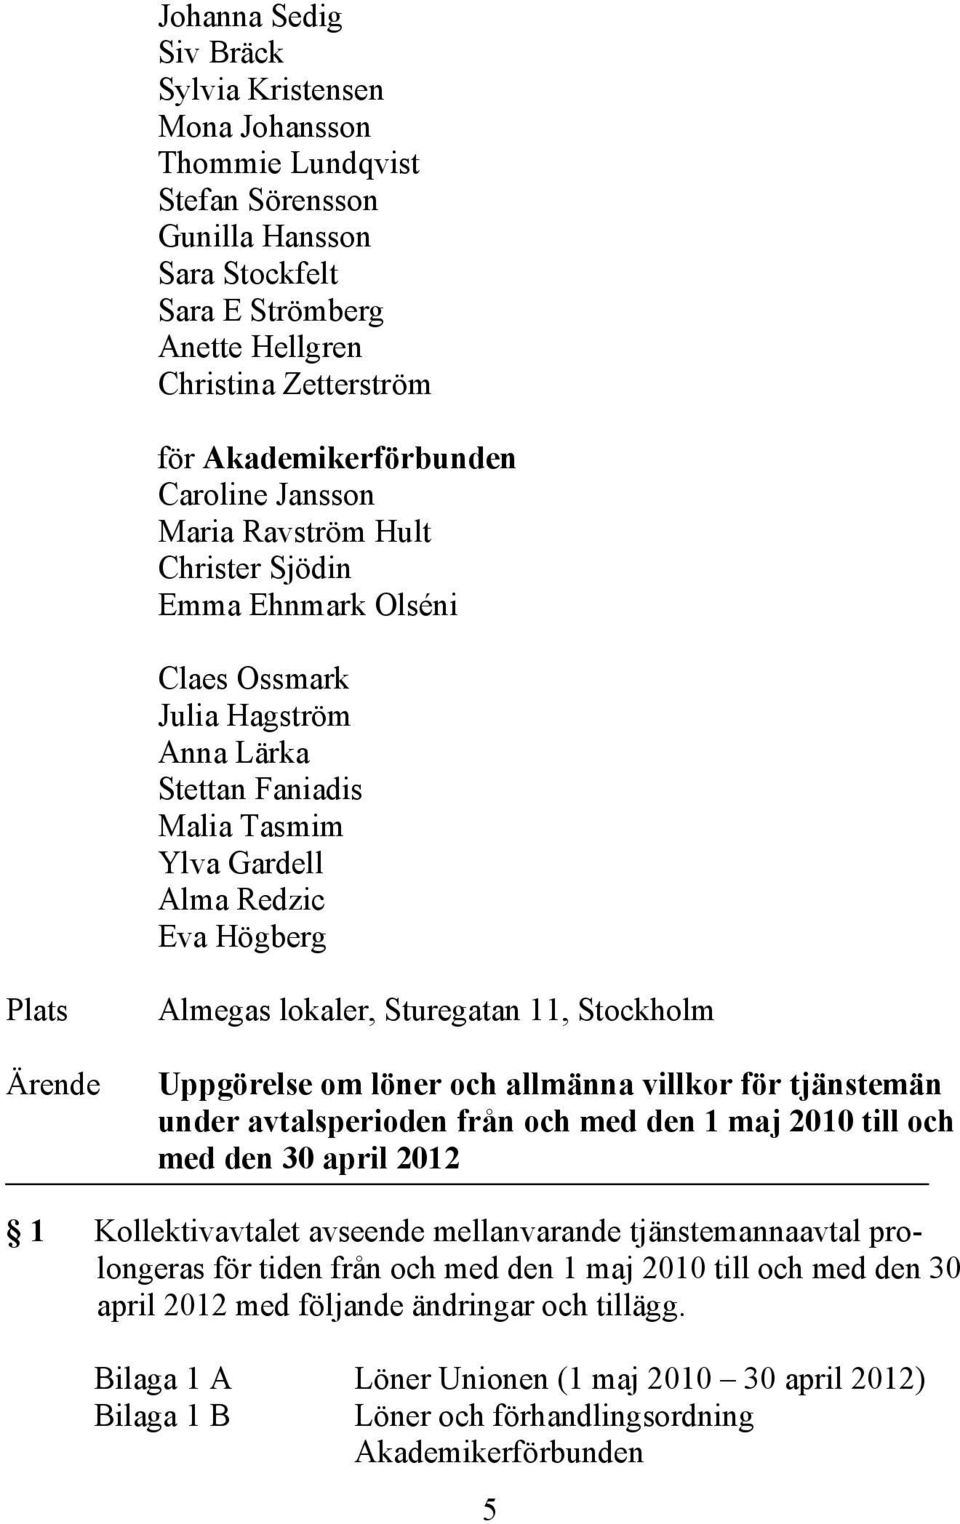 Plats Ärende Almegas lokaler, Sturegatan 11, Stockholm Uppgörelse om löner och allmänna villkor för tjänstemän under avtalsperioden från och med den 1 maj 2010 till och med den 30 april 2012 1